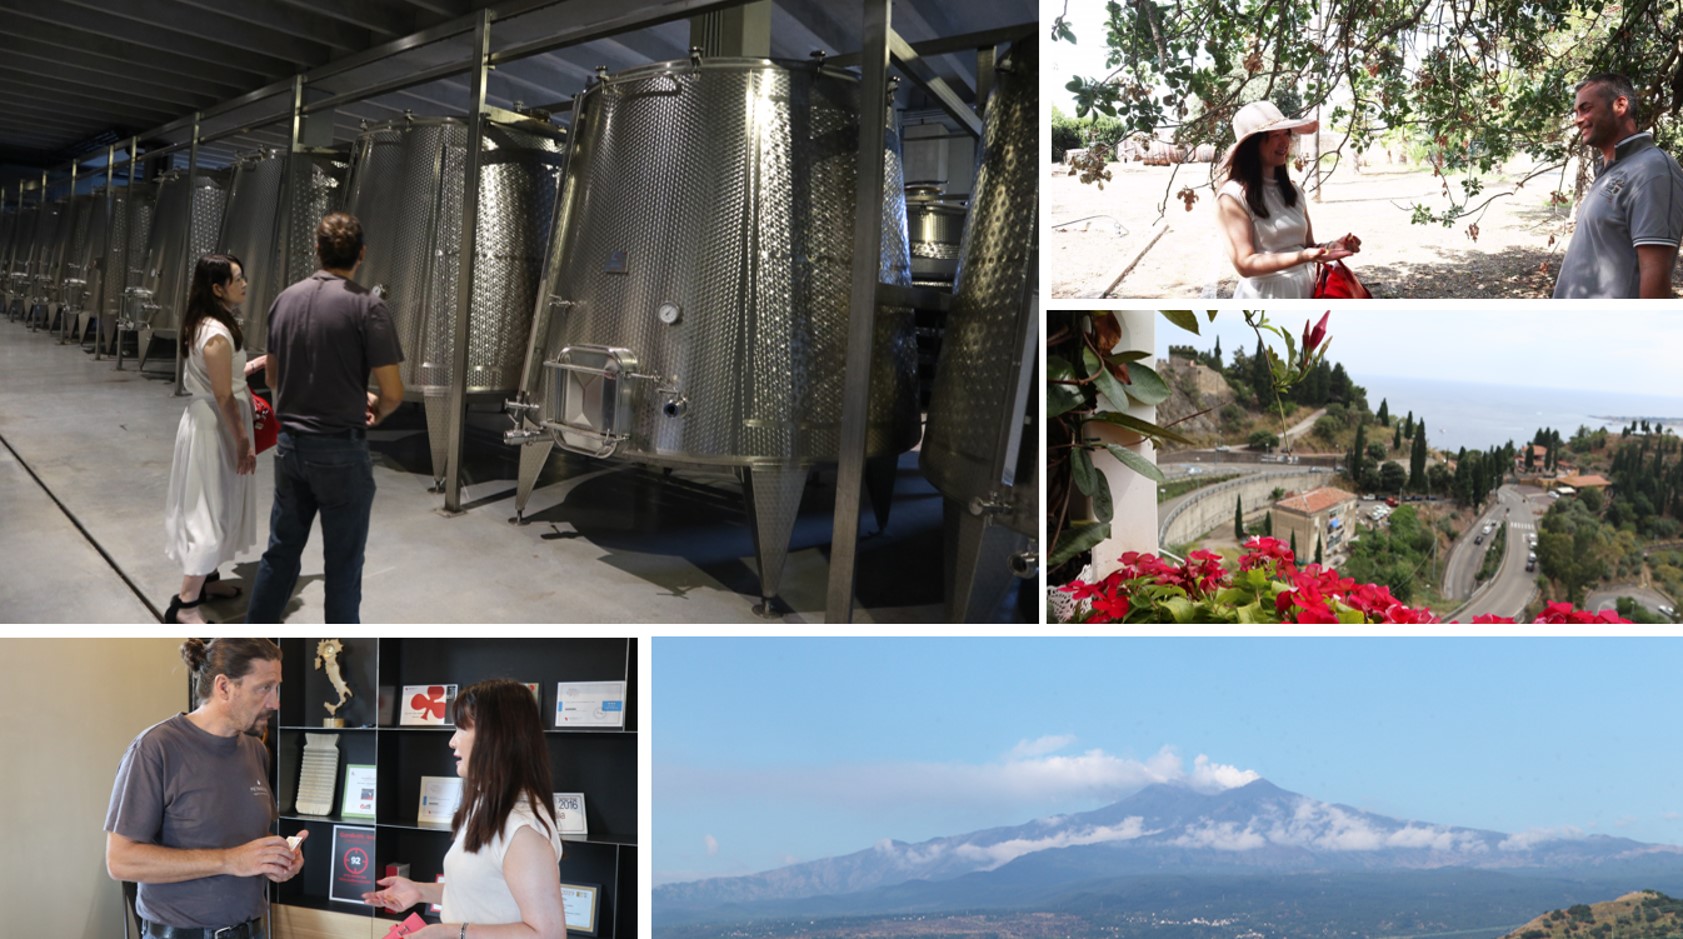 シチリア東部に位置するエトナ火山のふもとはワインの銘醸地。溶岩を含んだ土地が生むワインにはミネラルが豊富とのこと。独特な風味と上品かつ力強い口当たりはそこから来ているのか。